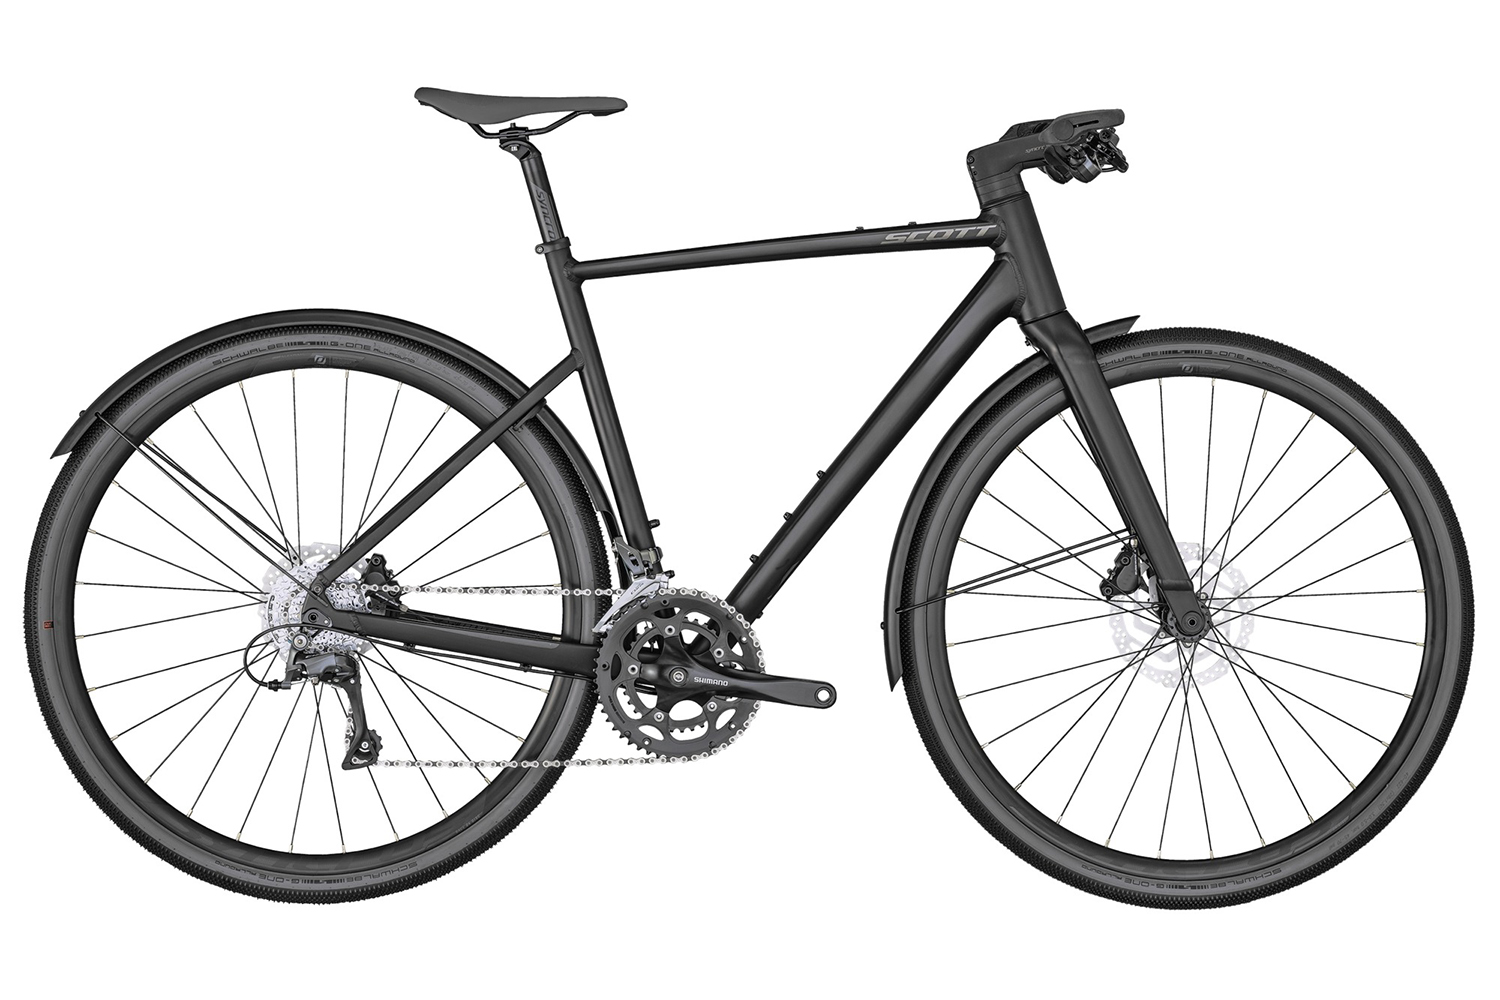  Отзывы о Городском велосипеде Scott Metrix 30 EQ 2020